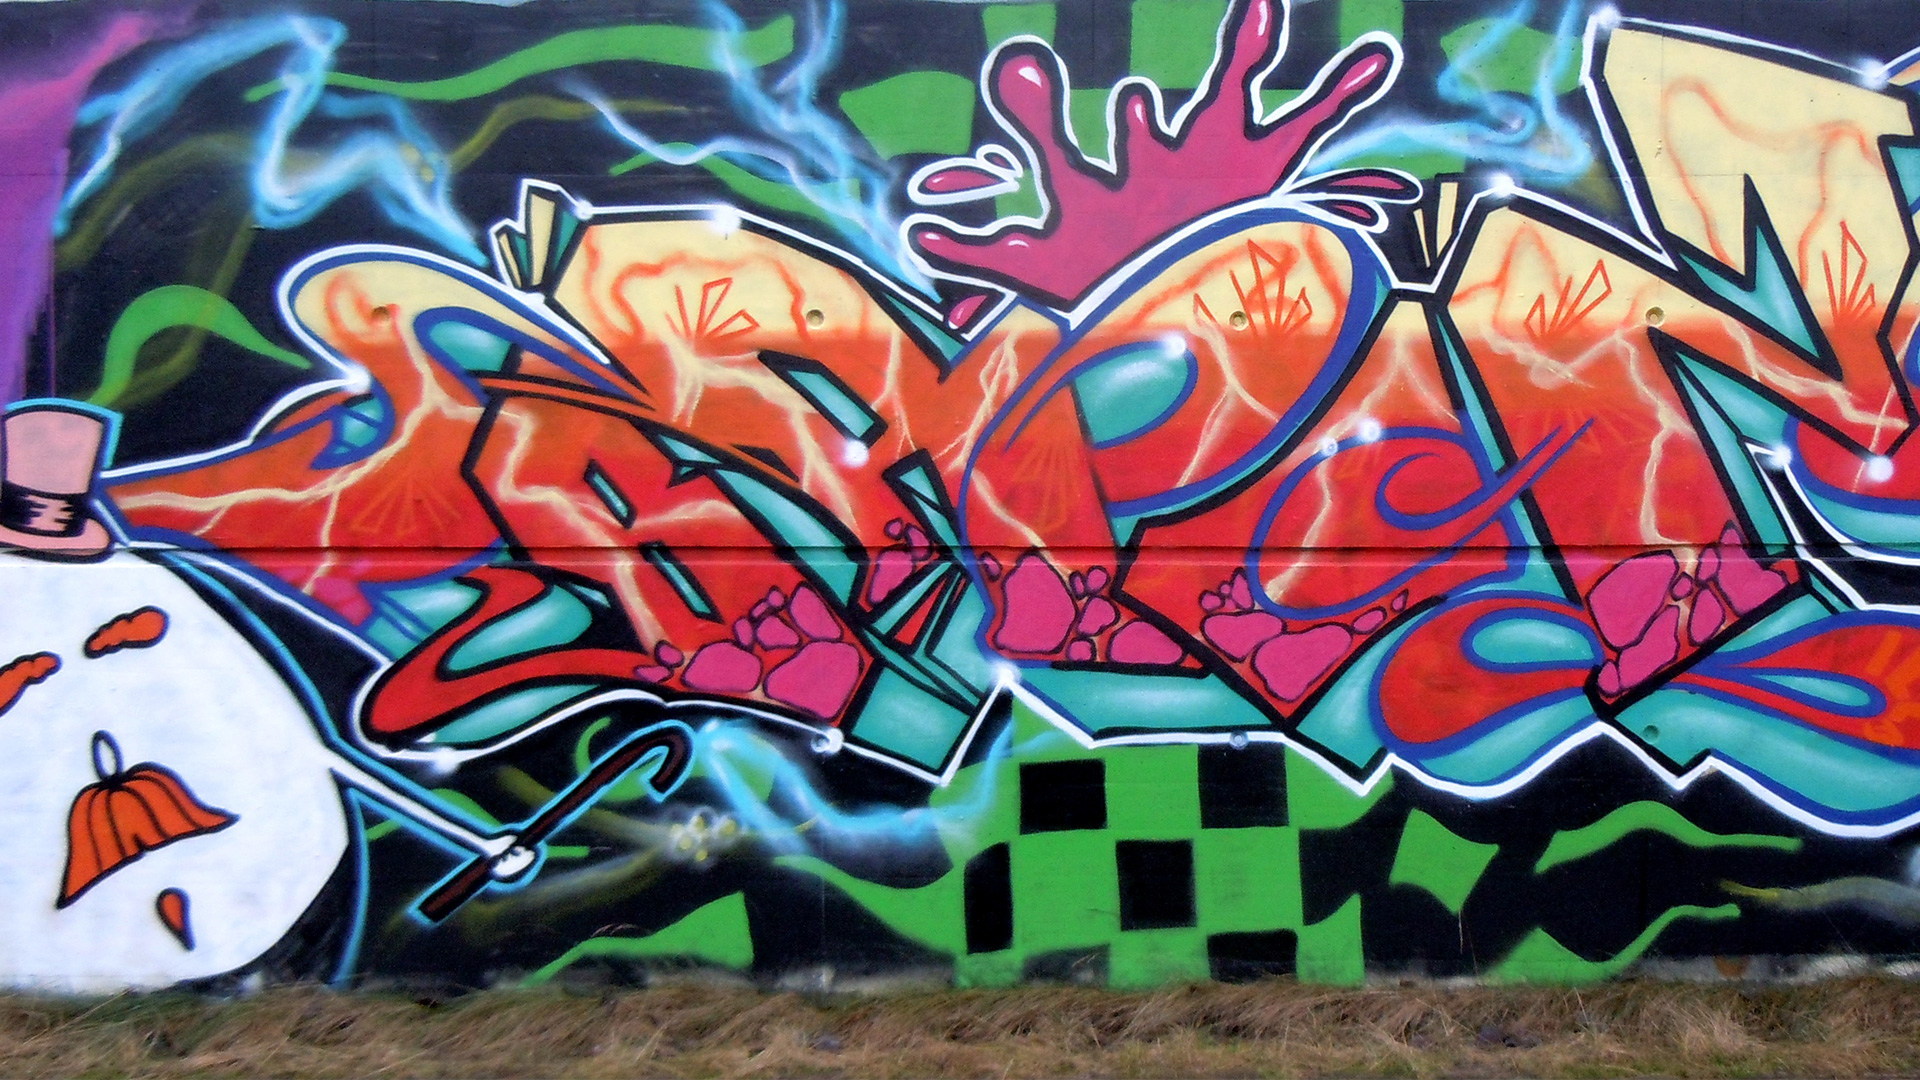 Graffiti & contract work – Brozilla